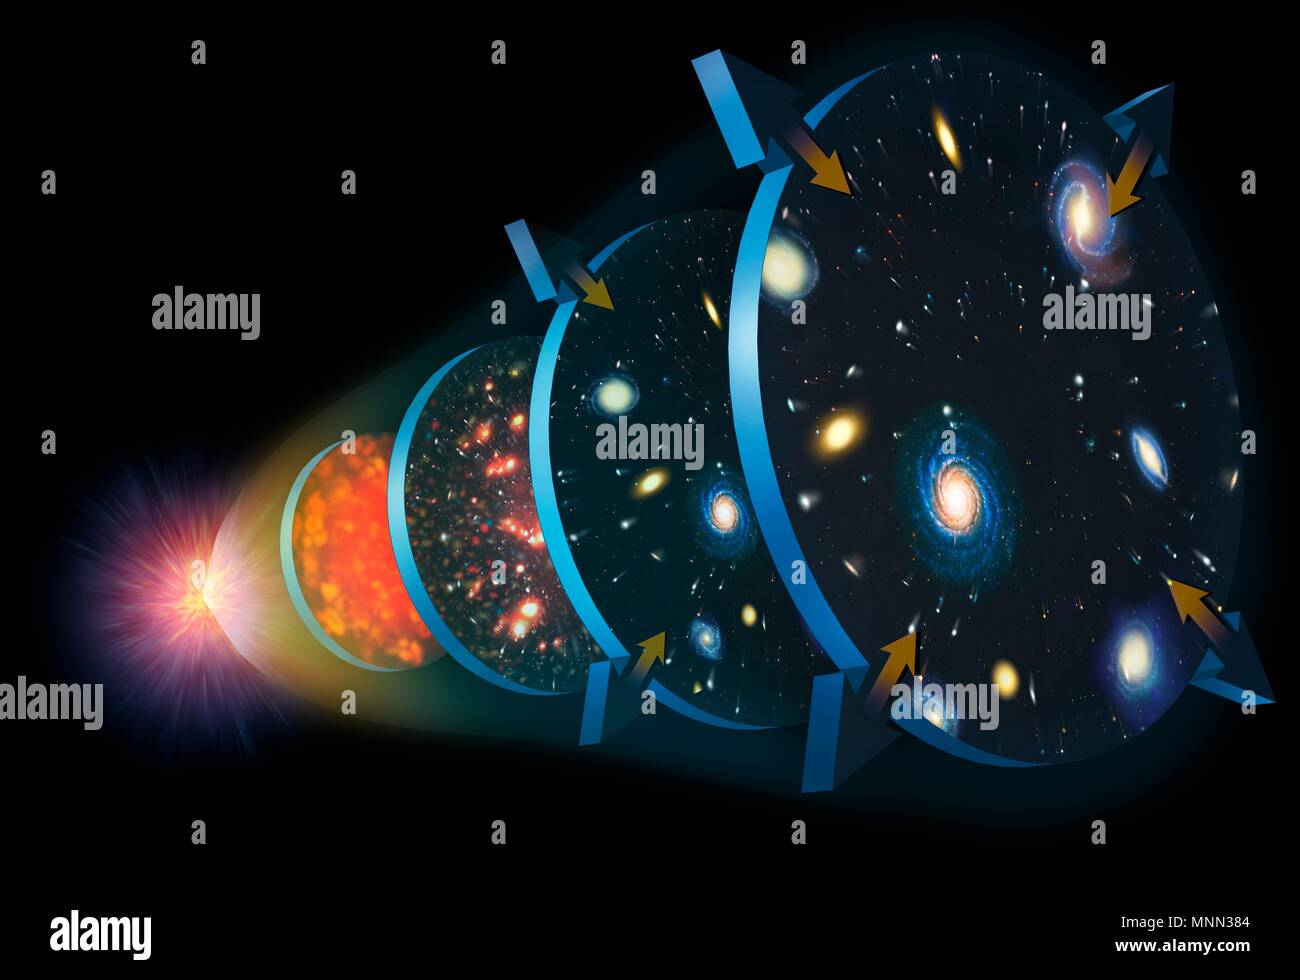 Ilustración de la expansión del Universo. El Cosmos comenzó a 13,7 mil millones de años, en un evento llamado el Big Bang (izquierda). Inmediatamente empezó a expandirse y refrigeración (fase 1). Finalmente, el universo se volvió transparente a la radiación, y la primera cuestión fue capaz de formar grumos. Su expansión se desaceleró, hace unos 10 mil millones de años (etapa 2). En la etapa 3, 5 mil millones de años, el universo estaba lleno de estrellas y galaxias, y su expansión comenzó a acelerar de nuevo debido a la misteriosa energía oscura que impregna el universo. Foto de stock